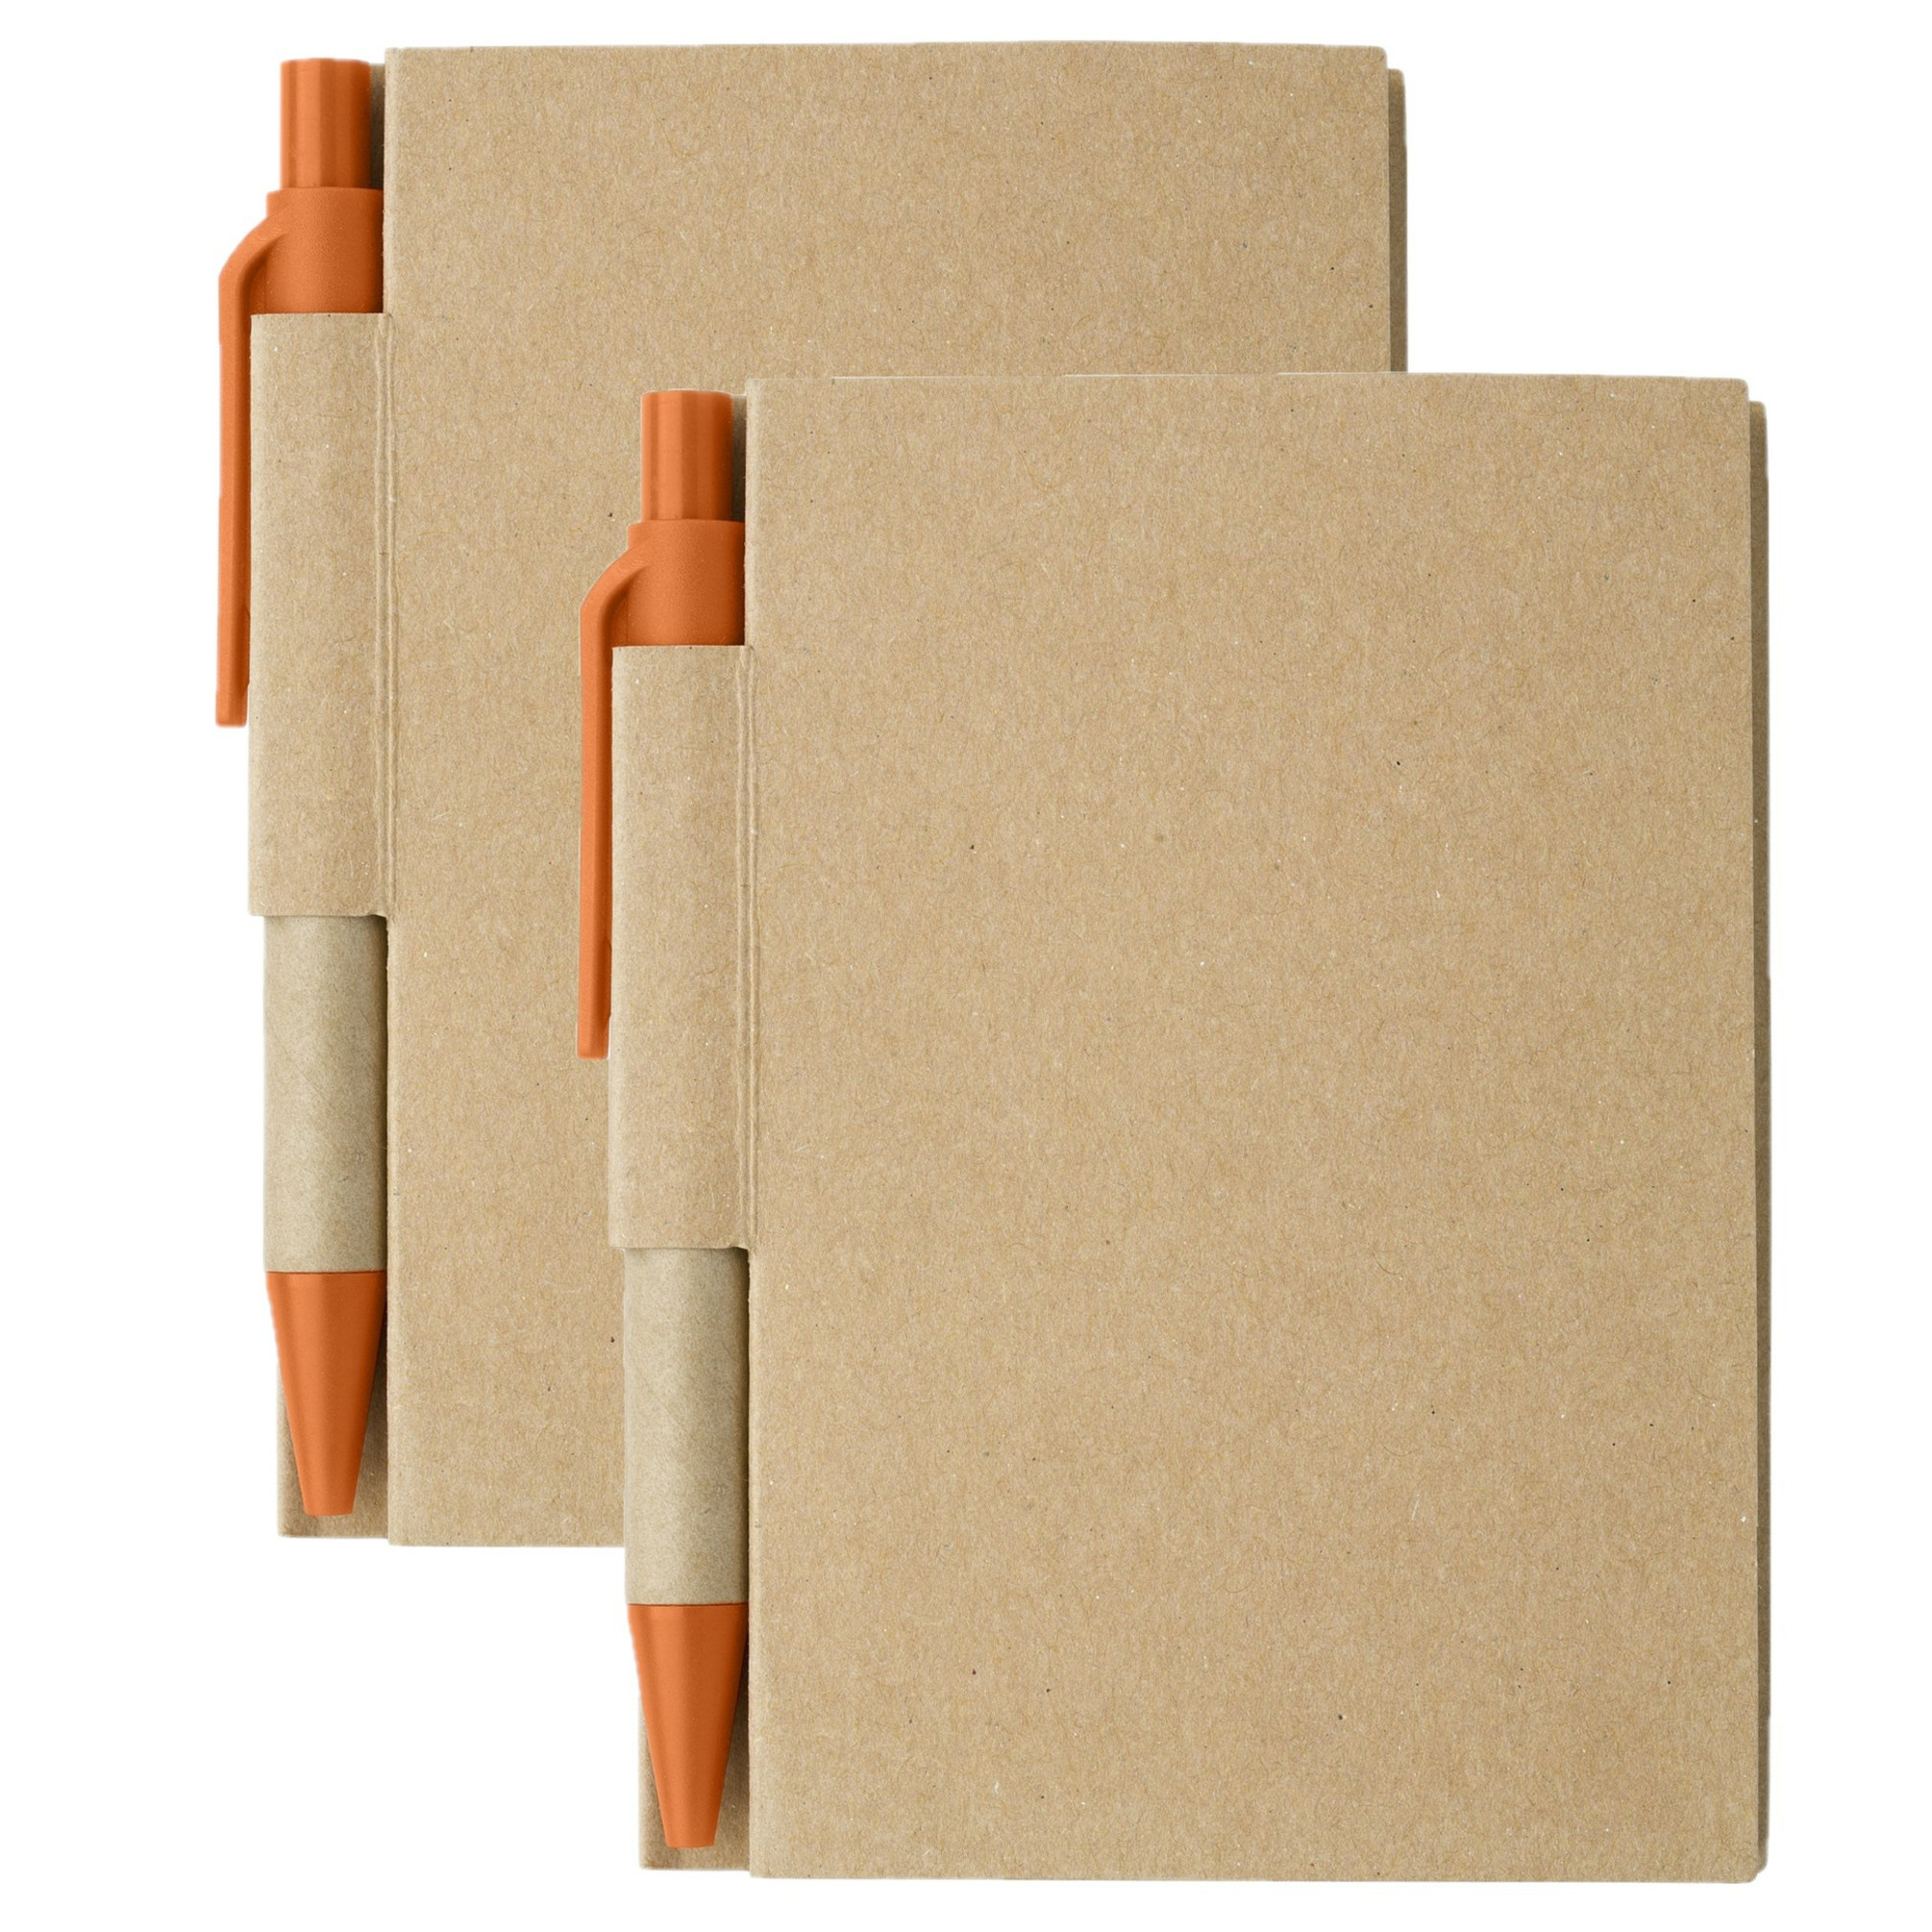 Notitie boekje-blok met balpen 2x harde kaft beige-oranje 11 x 8 cm 80 bladzijden geliniee